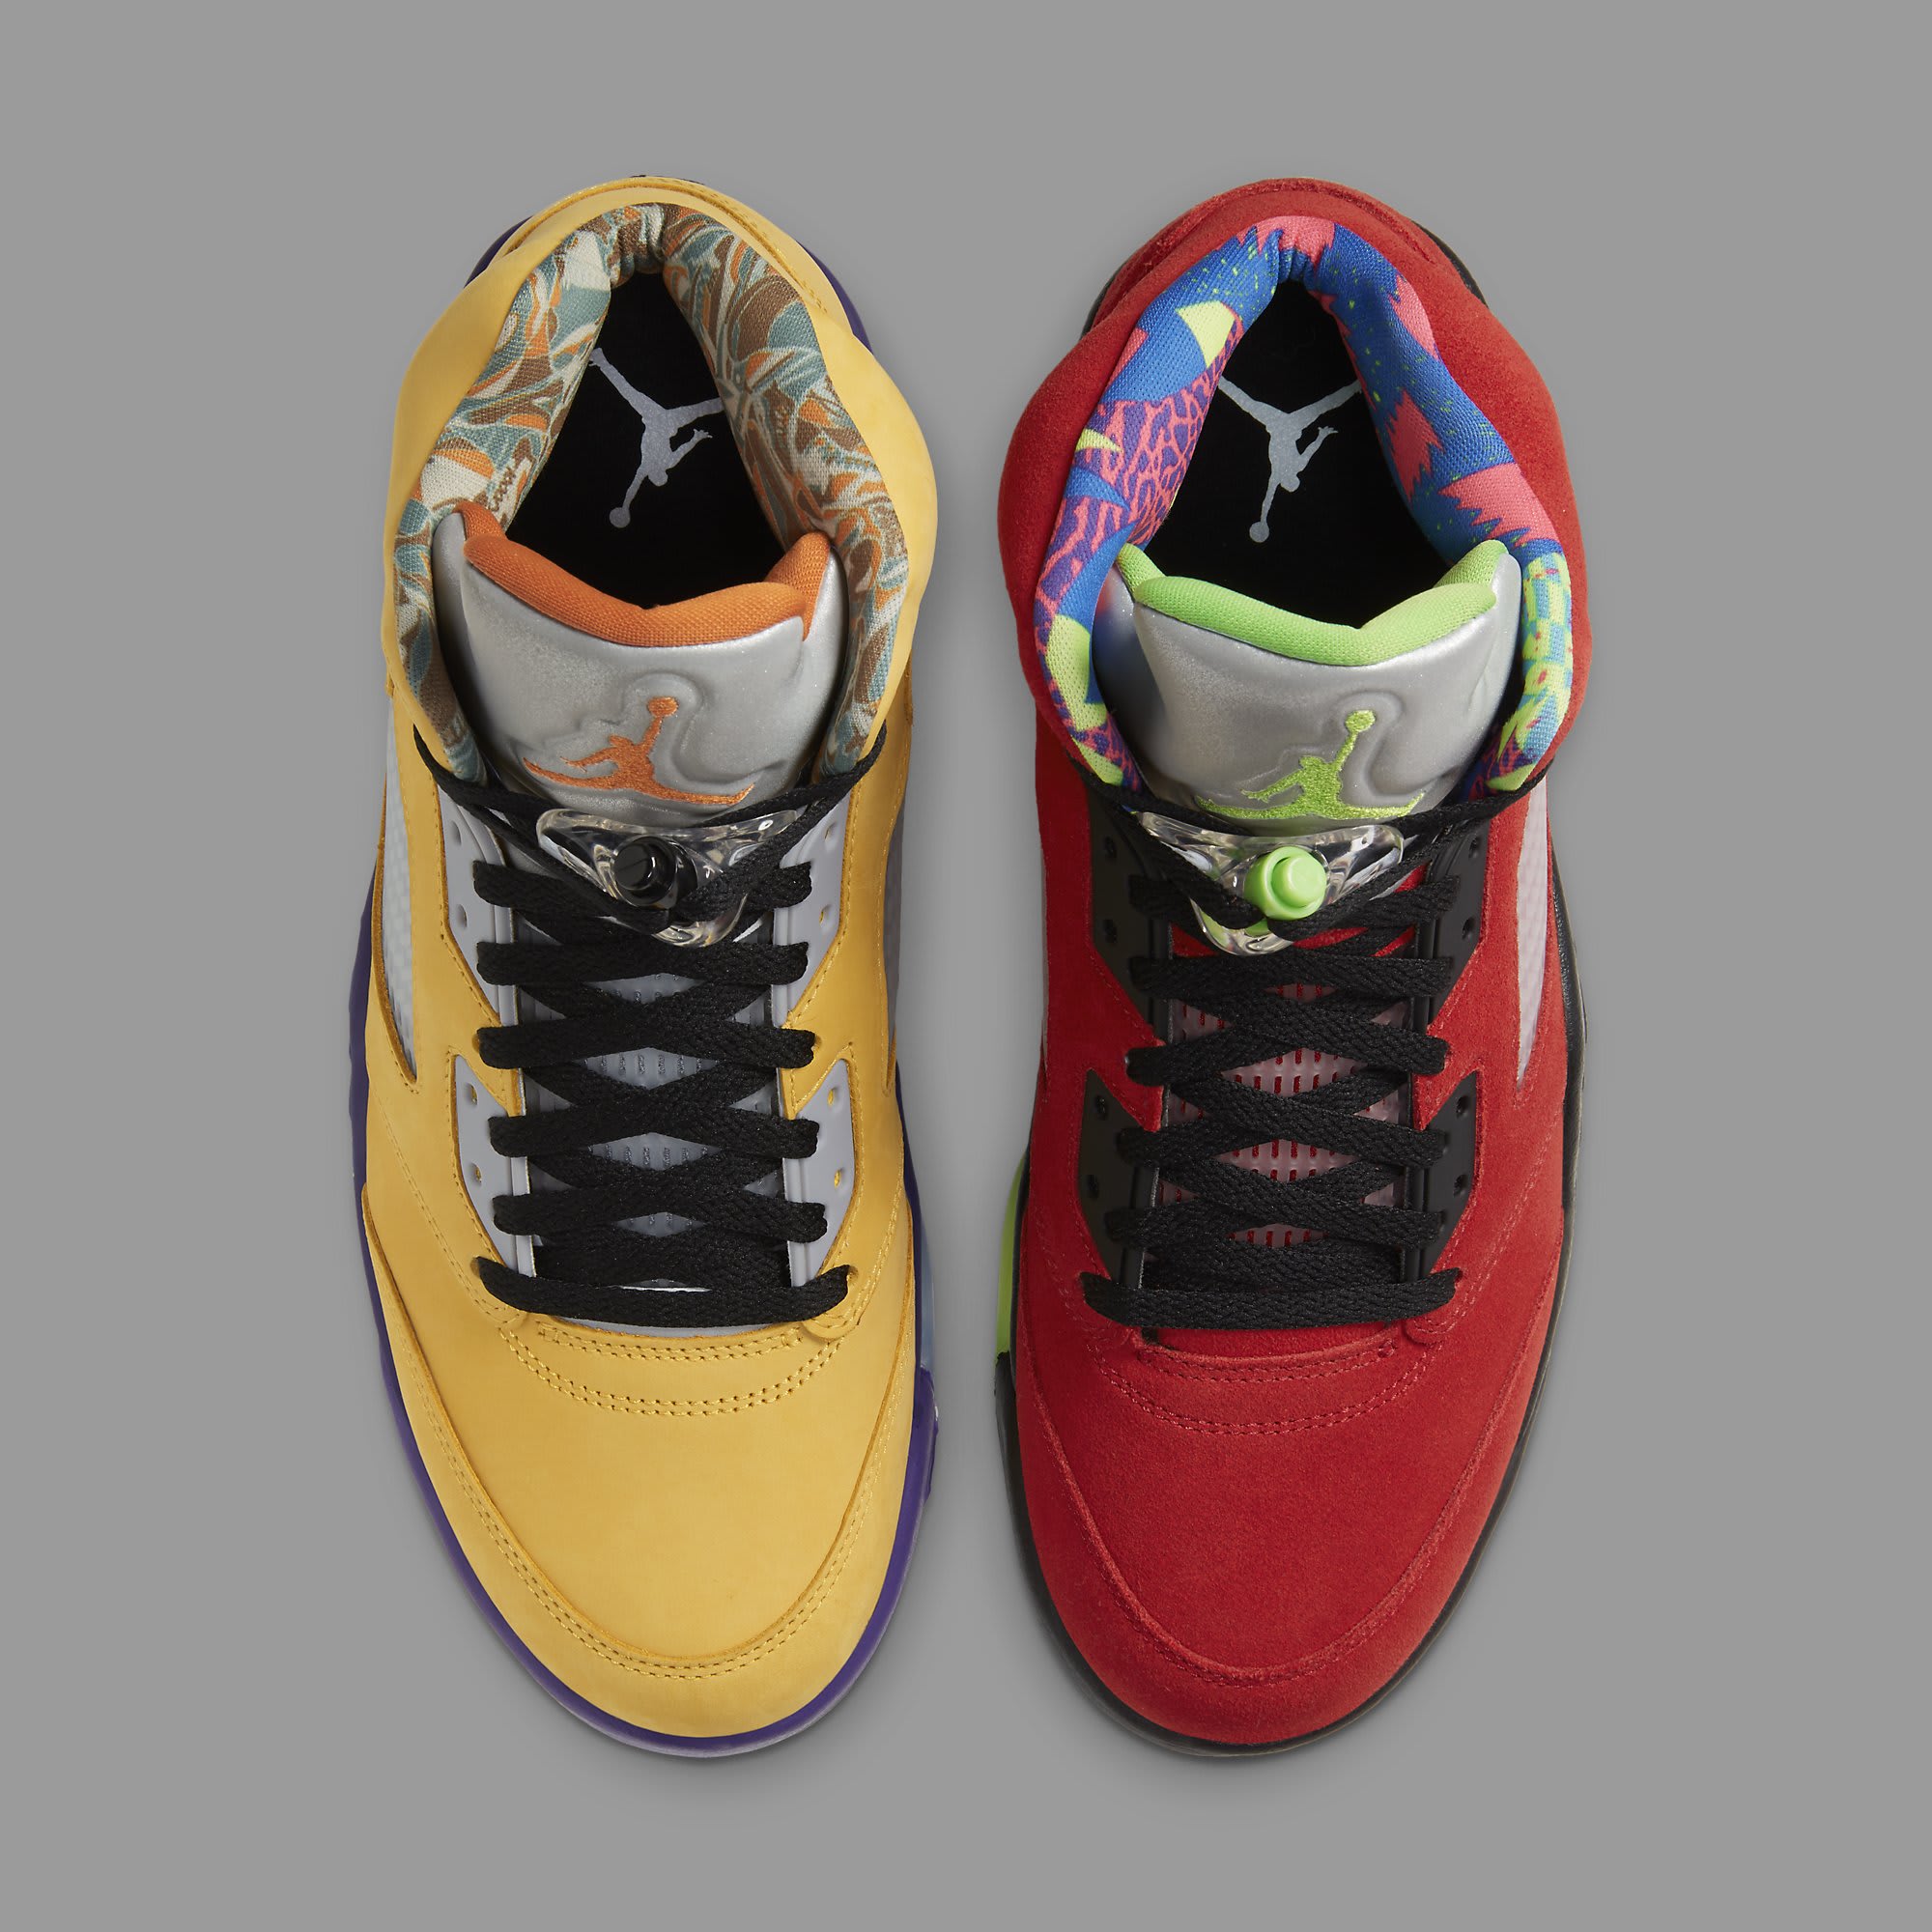 jordan shoes two different colors